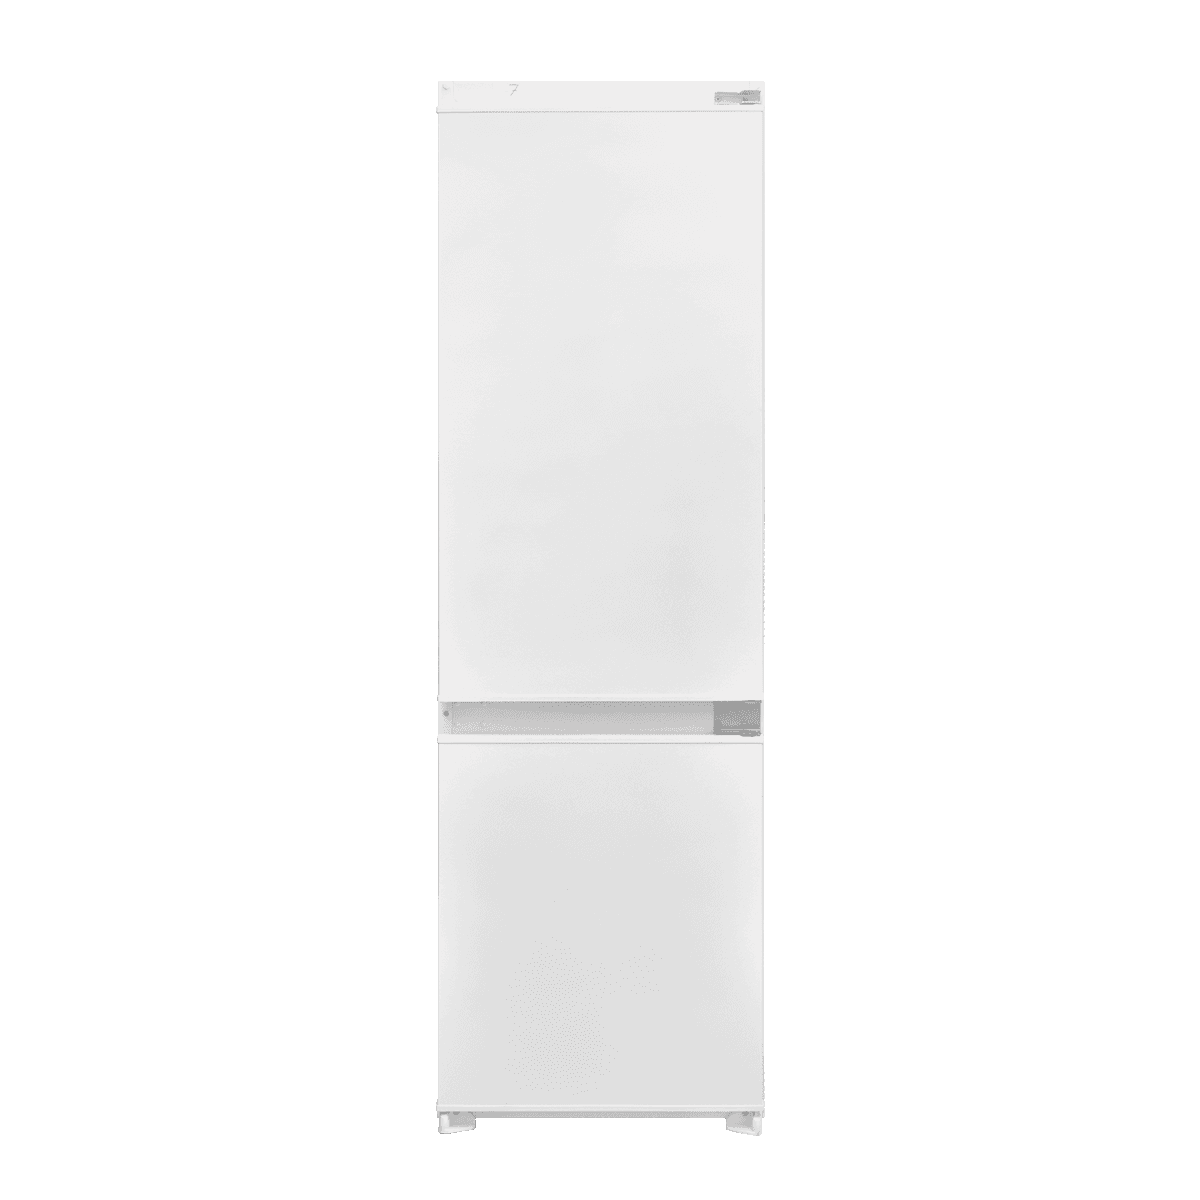 Selected image for VOX IKK 3410 E Ugradni kombinovani frižider, 181l/70l, 217kWh, Beli